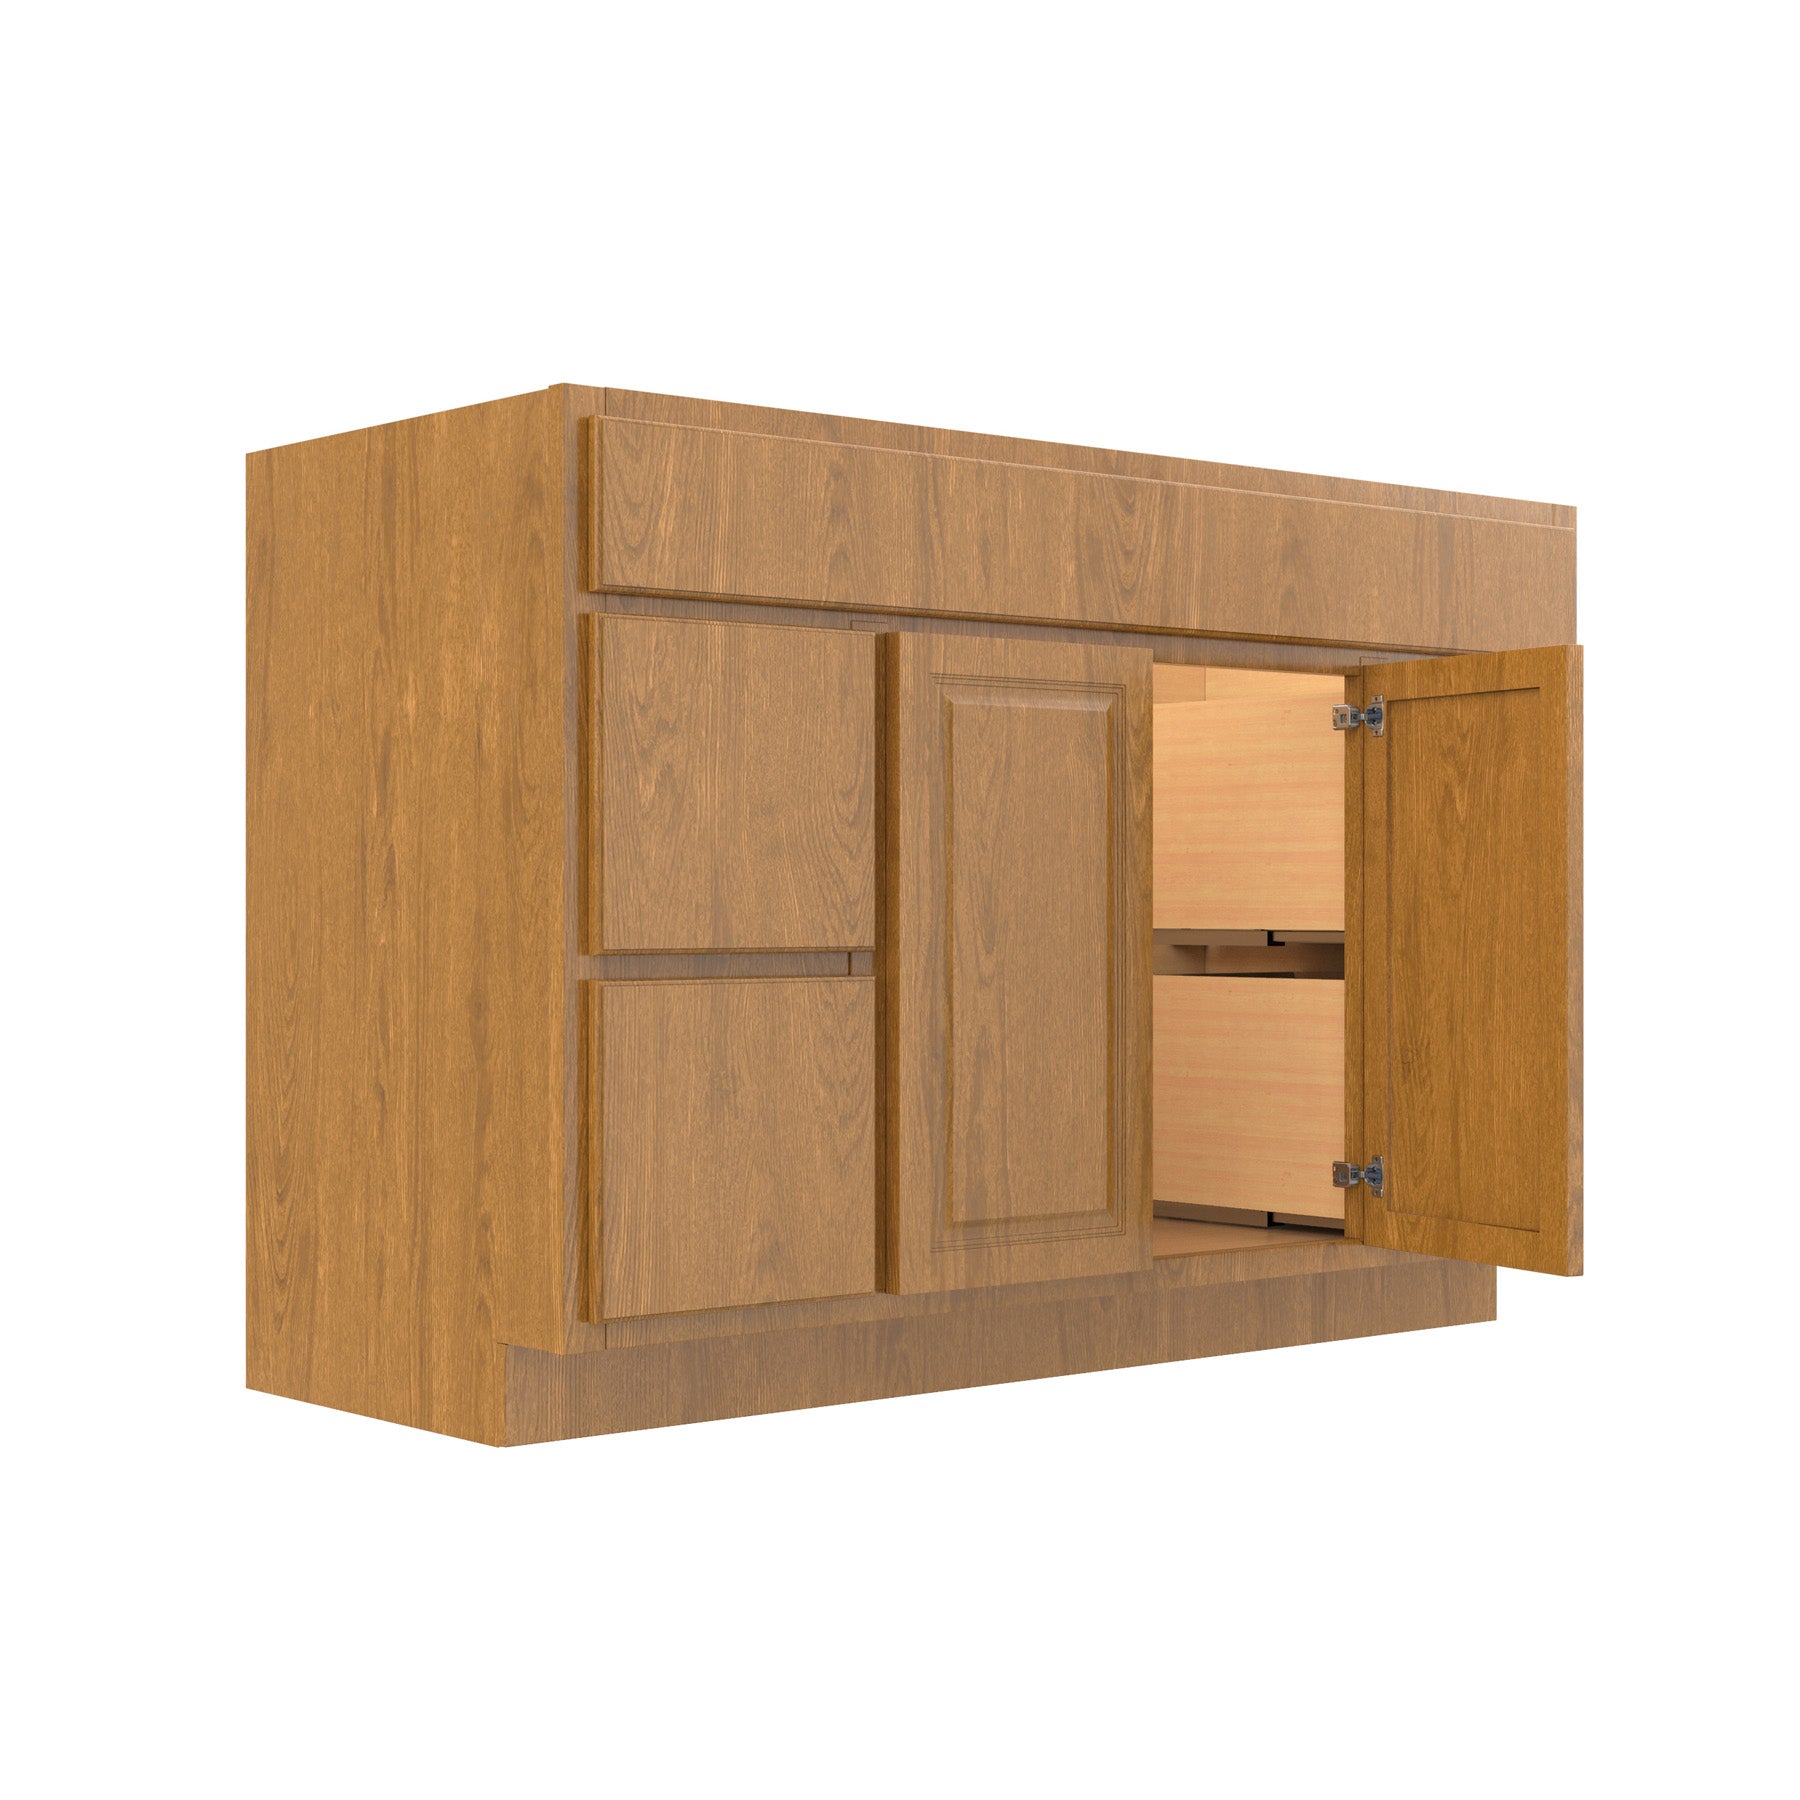 RTA - Country Oak - Door & Drawer Vanity Cabinet | 48"W x 32.5"H x 21"D